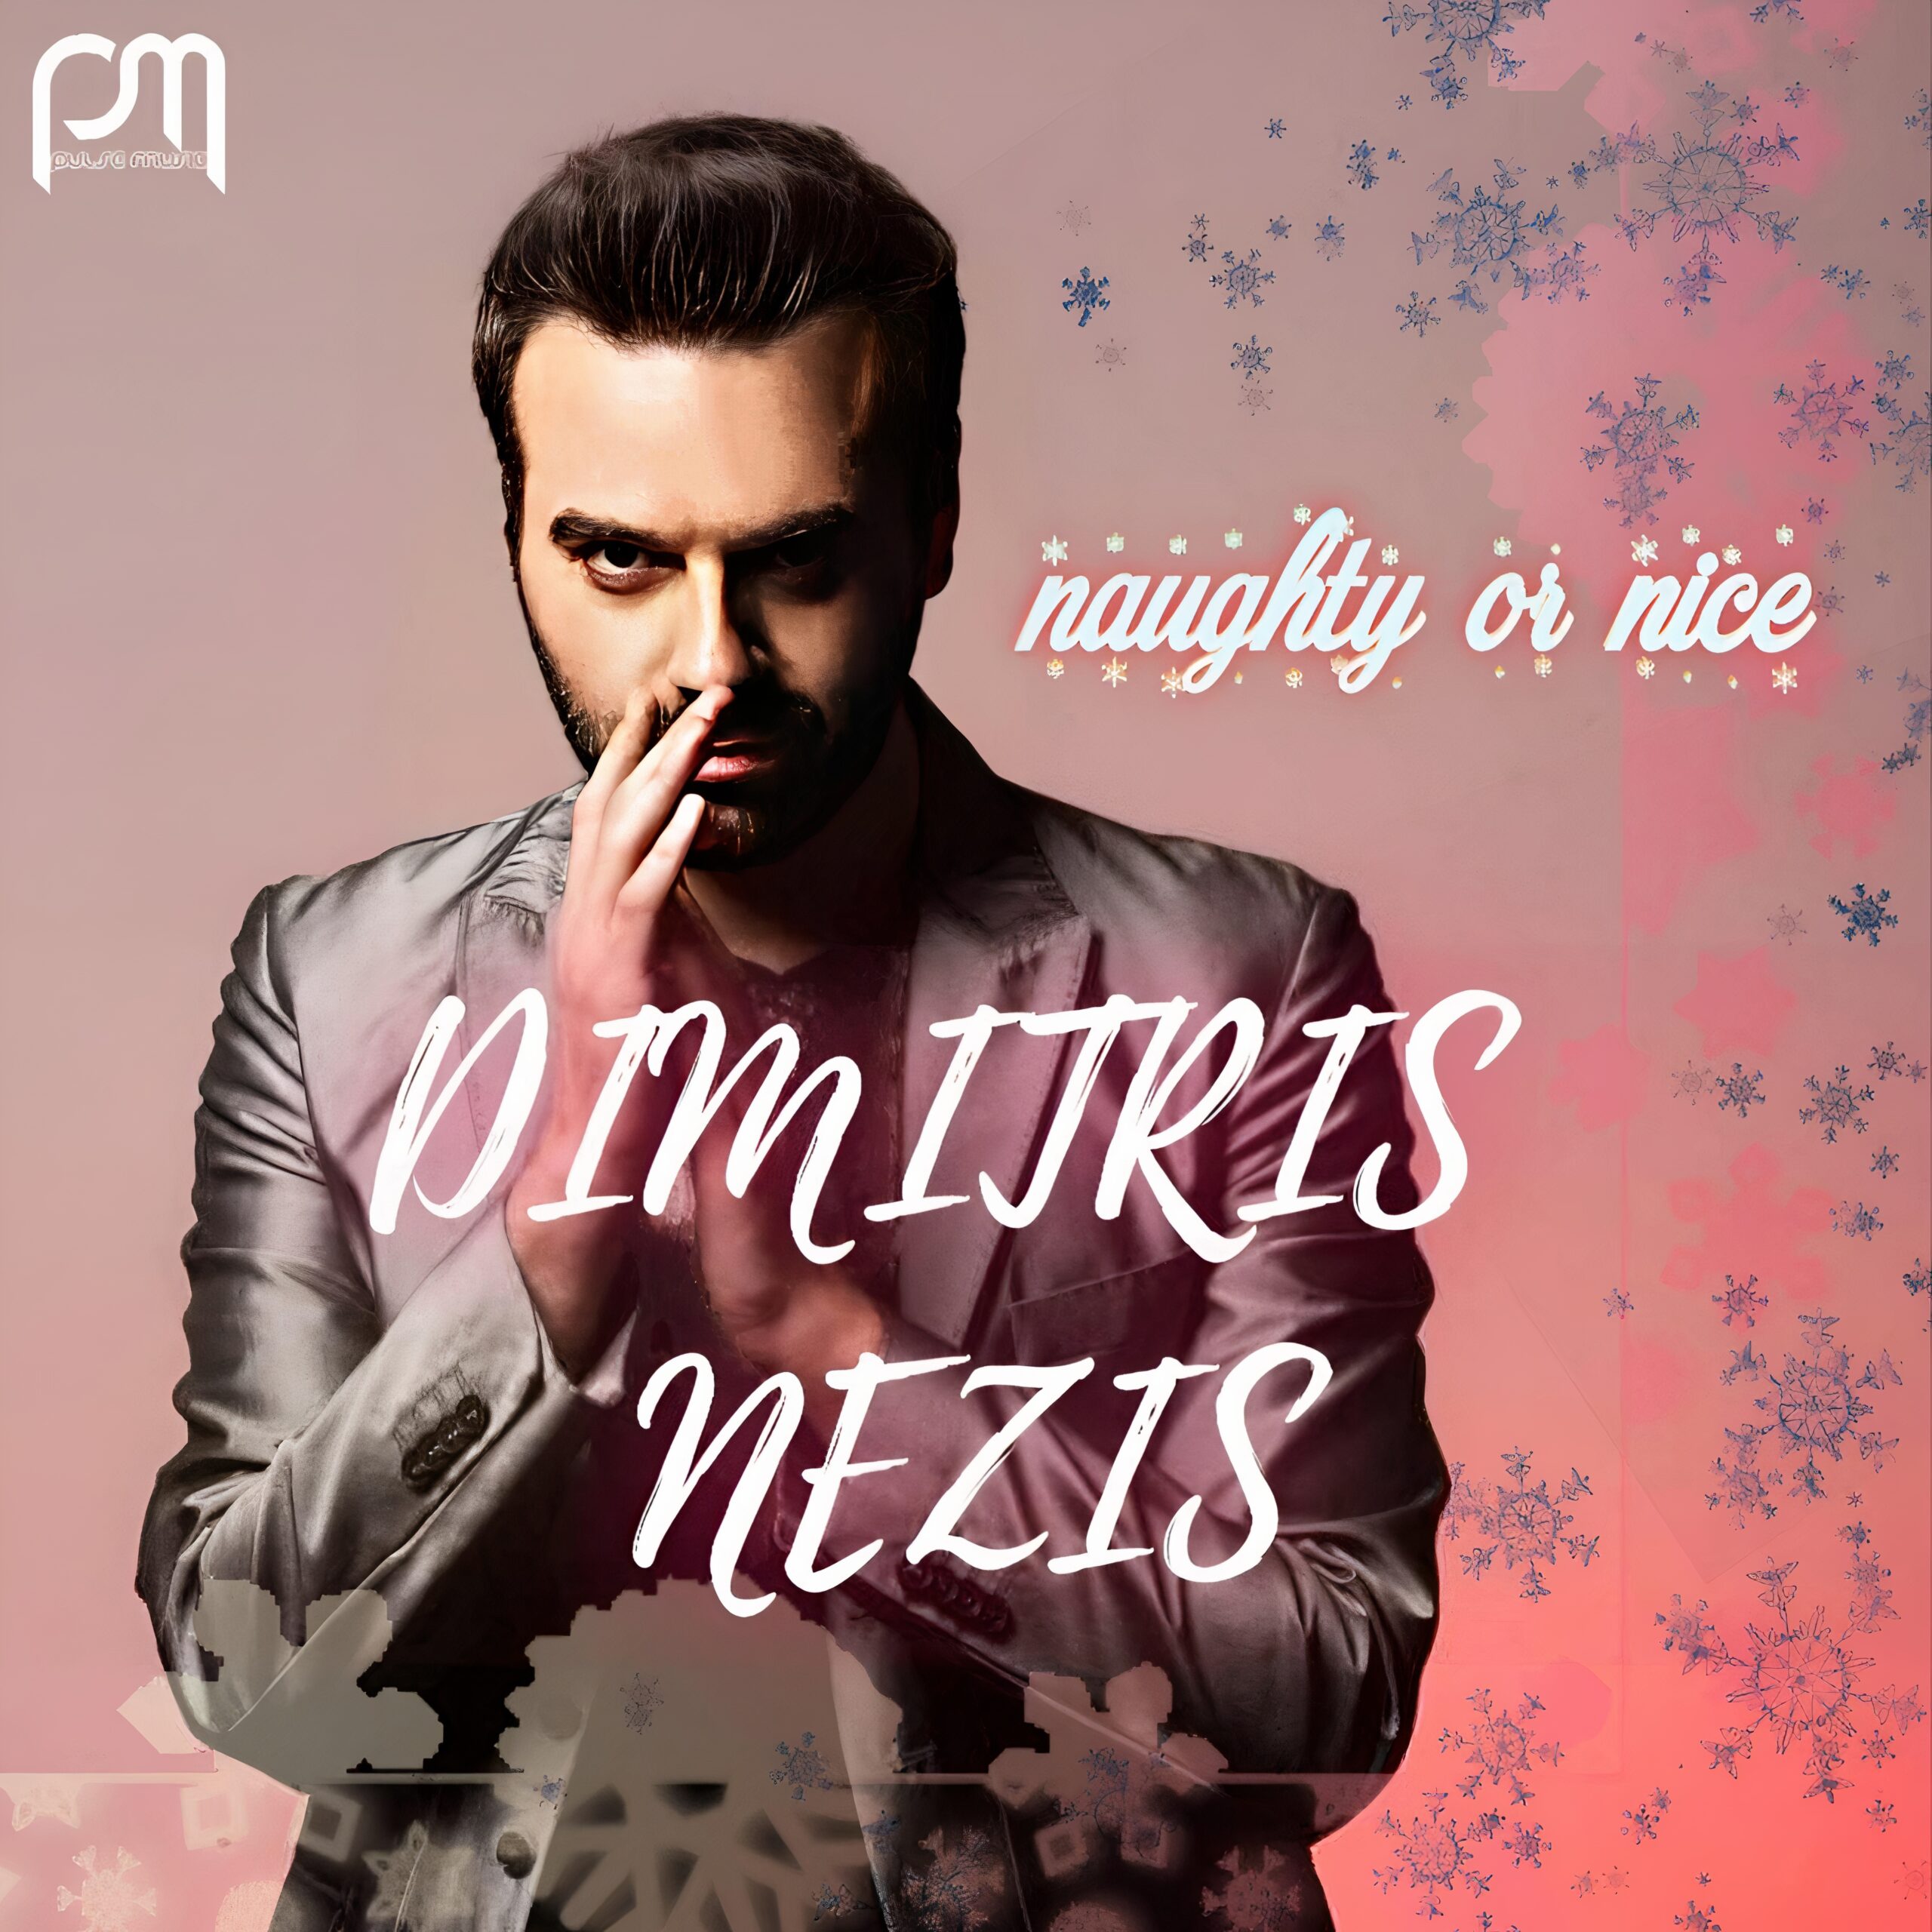 Dimitris Nezis “Naughty or nice” New xmas song